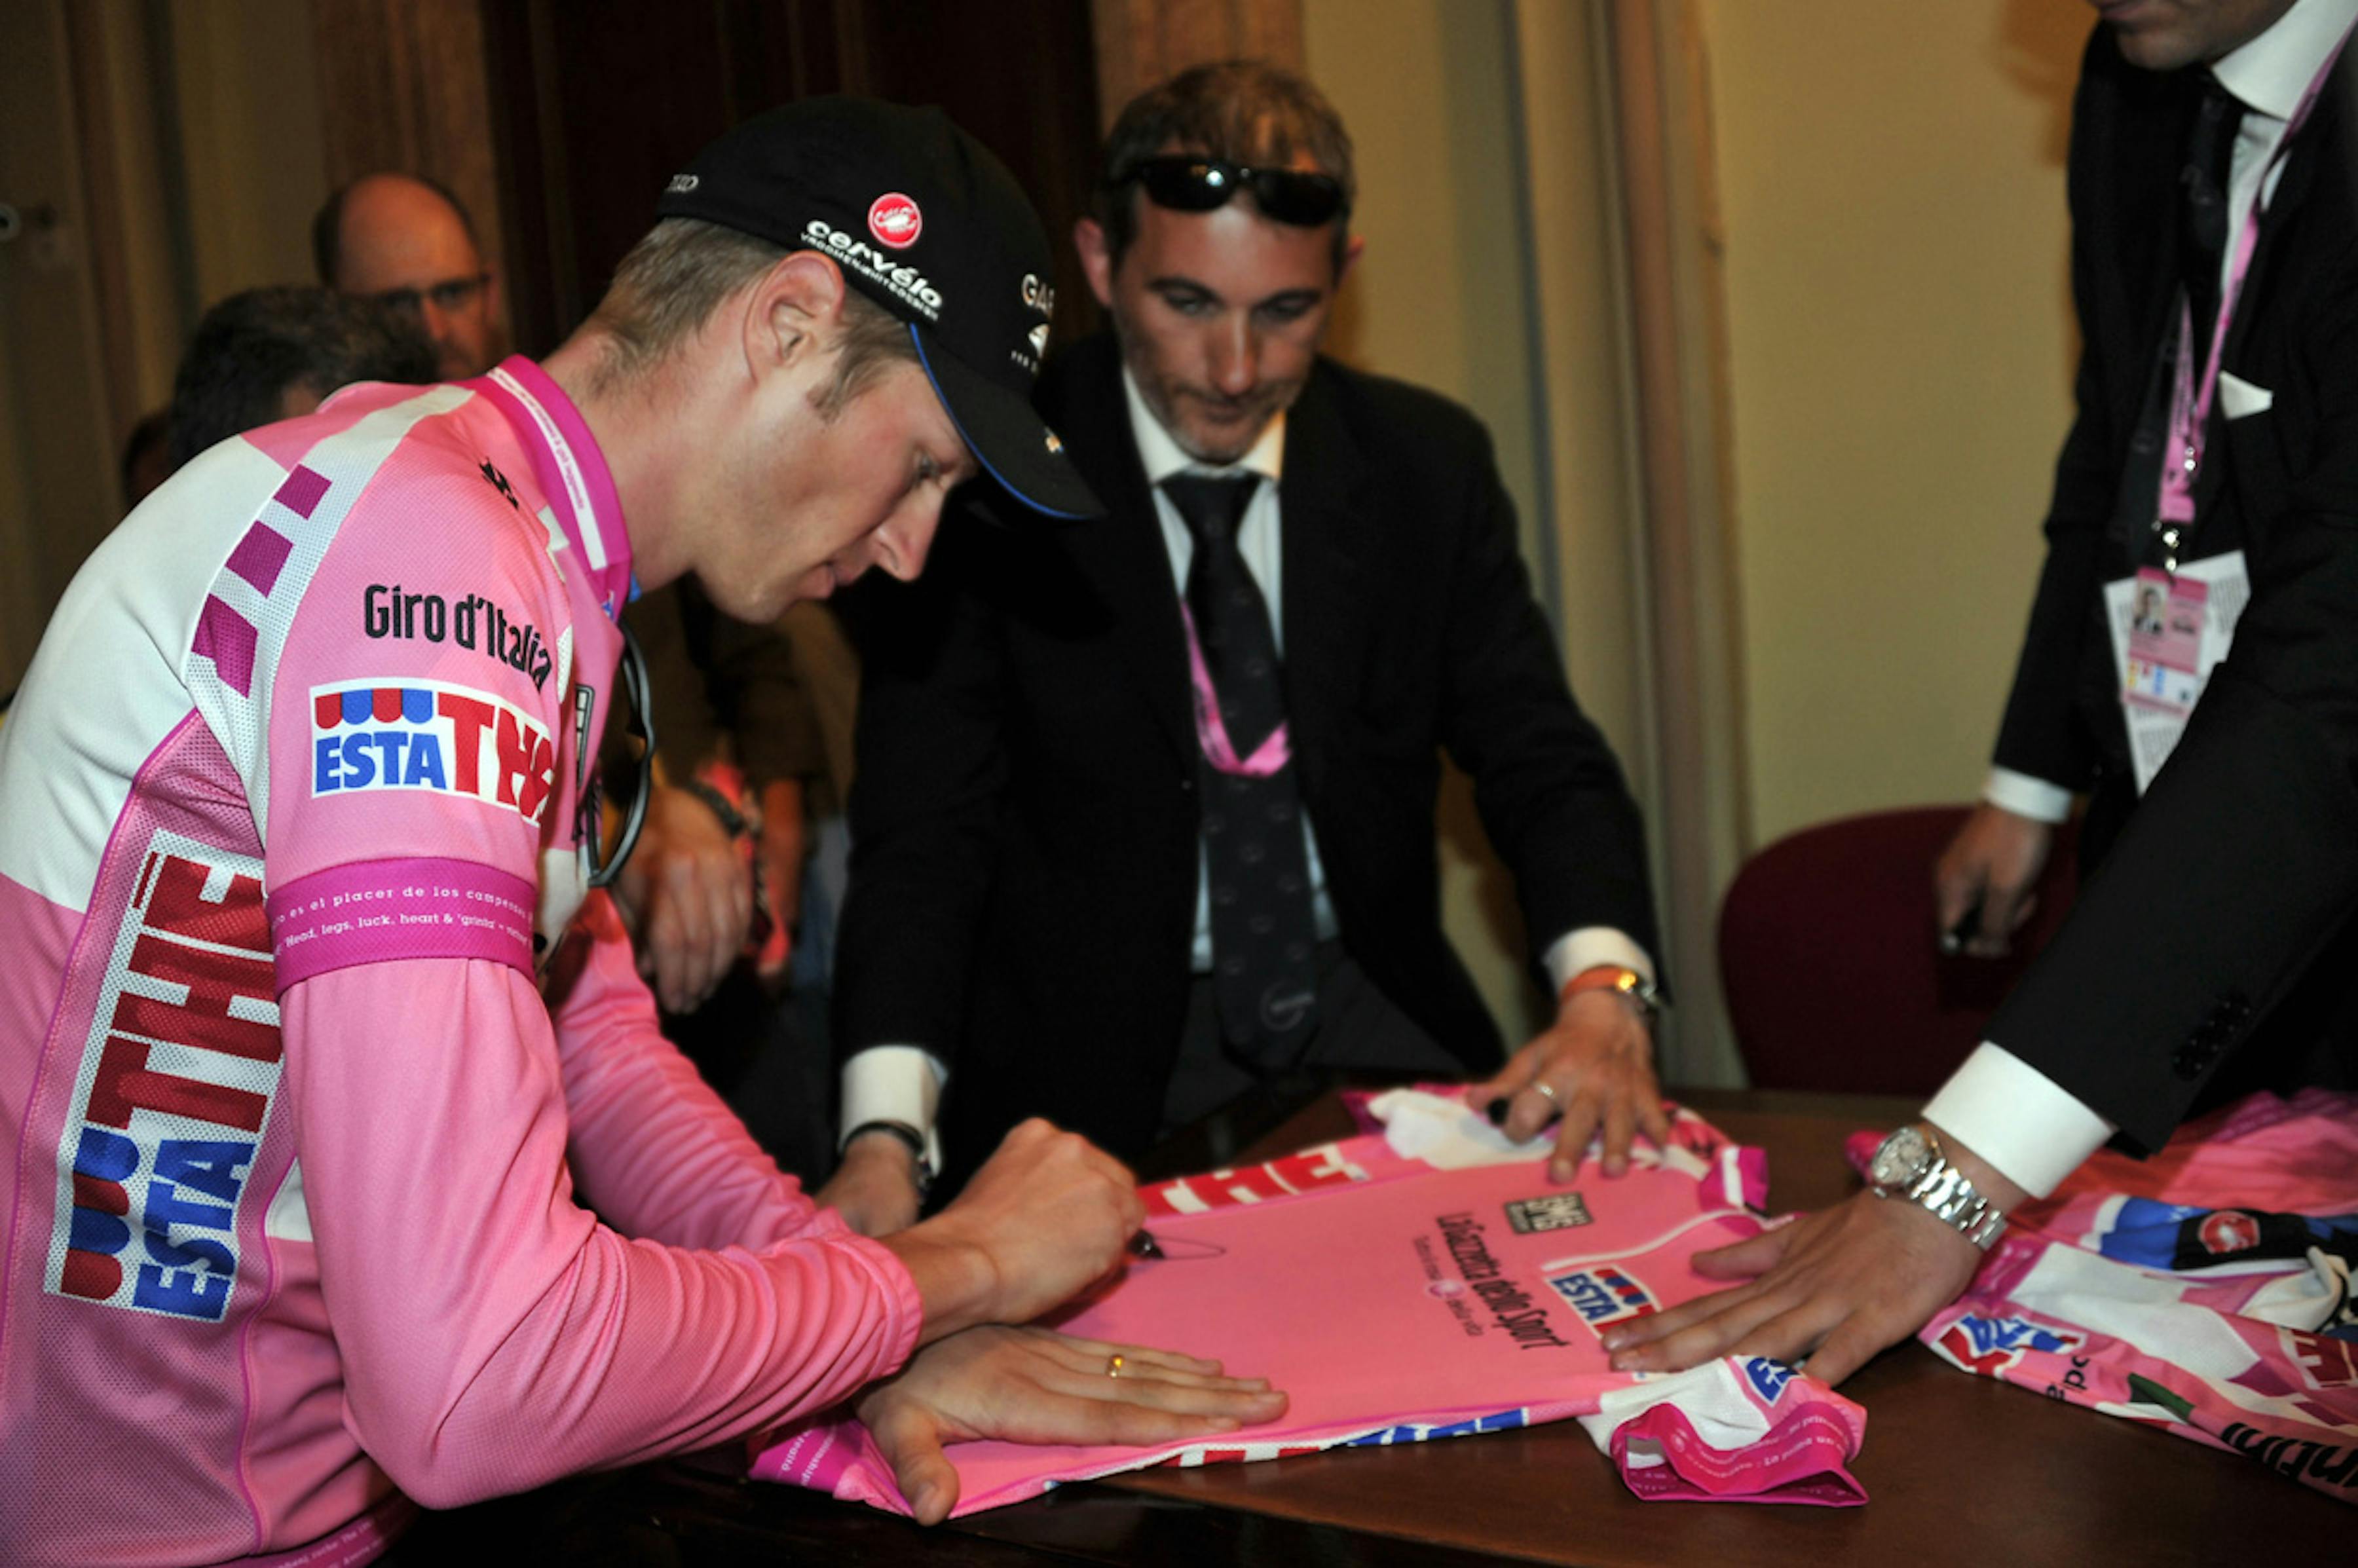 Il vincitore del Giro d'Italia 2012, il canadese Ryder Hejsedal, autografa la maglia rosa per l'UNICEF - ©Giro d'Italia/2012